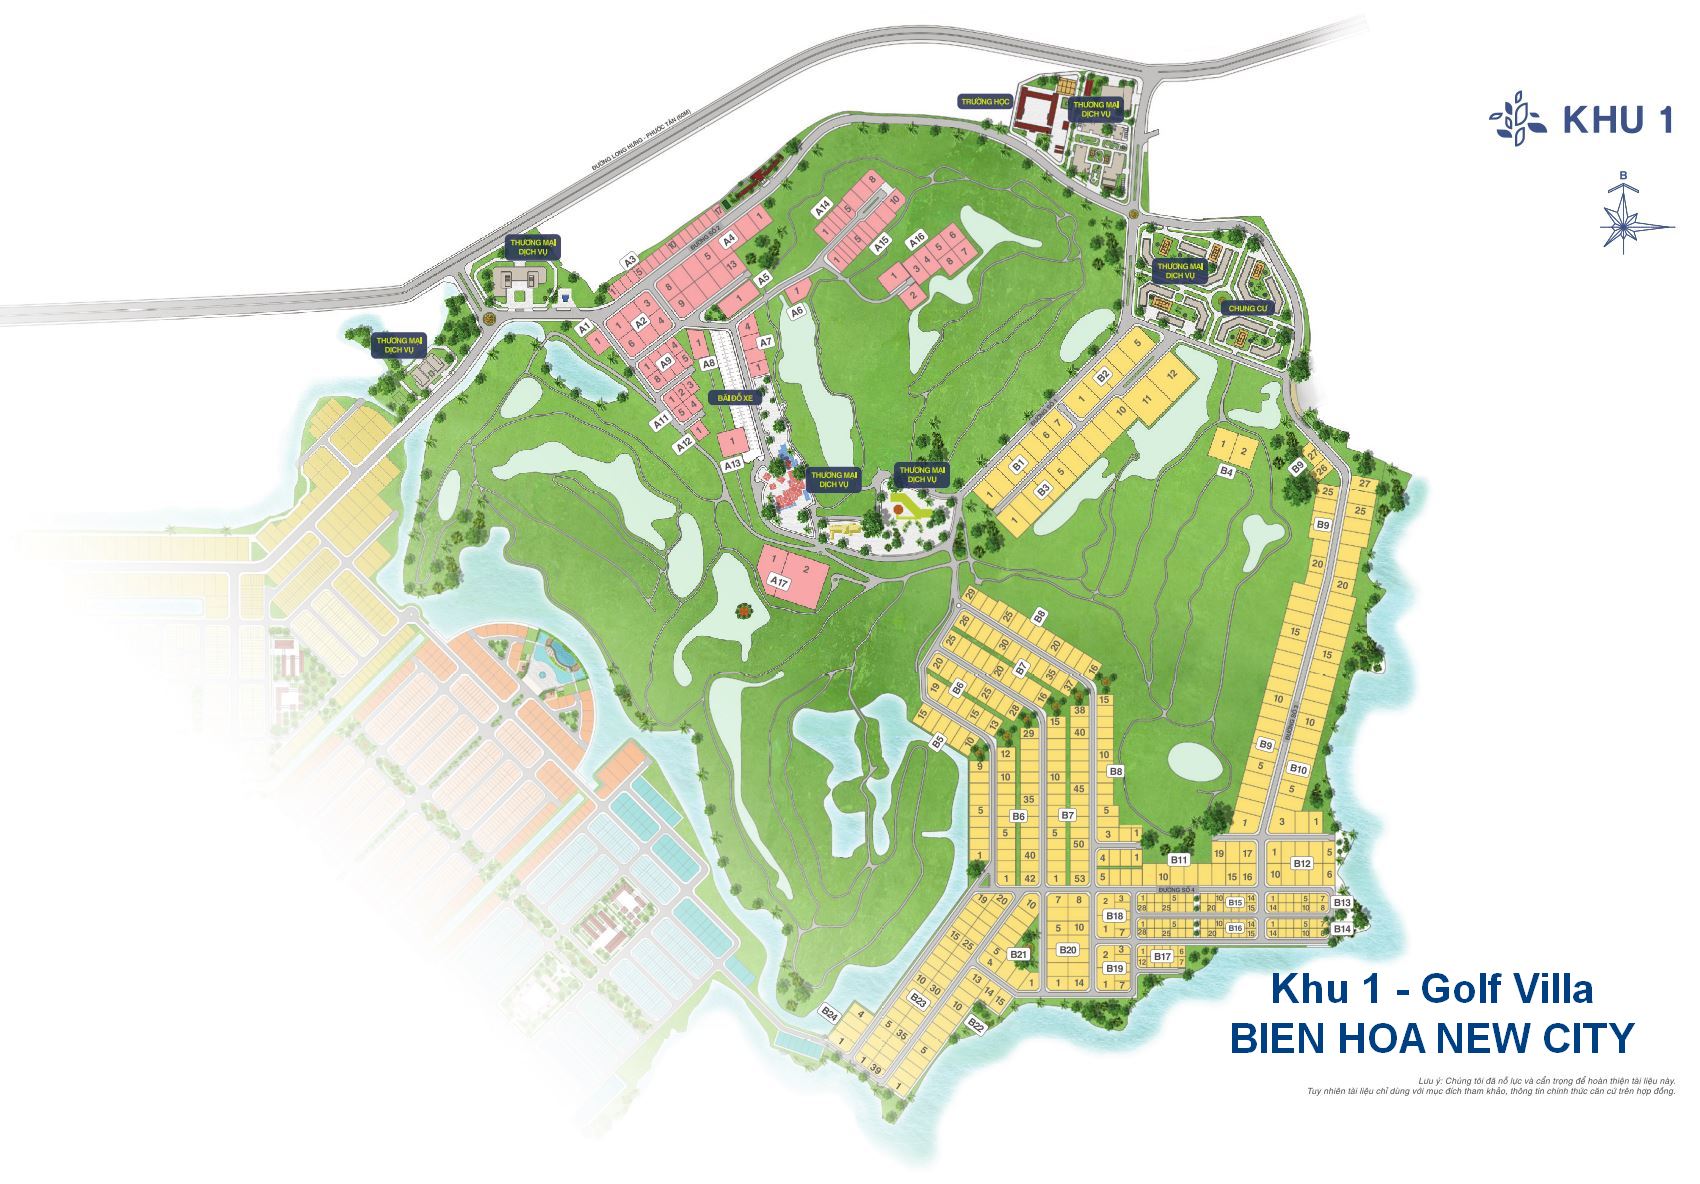 Mặt bằng tổng thể Bien Hoa New City - Khu I Golf Villa)